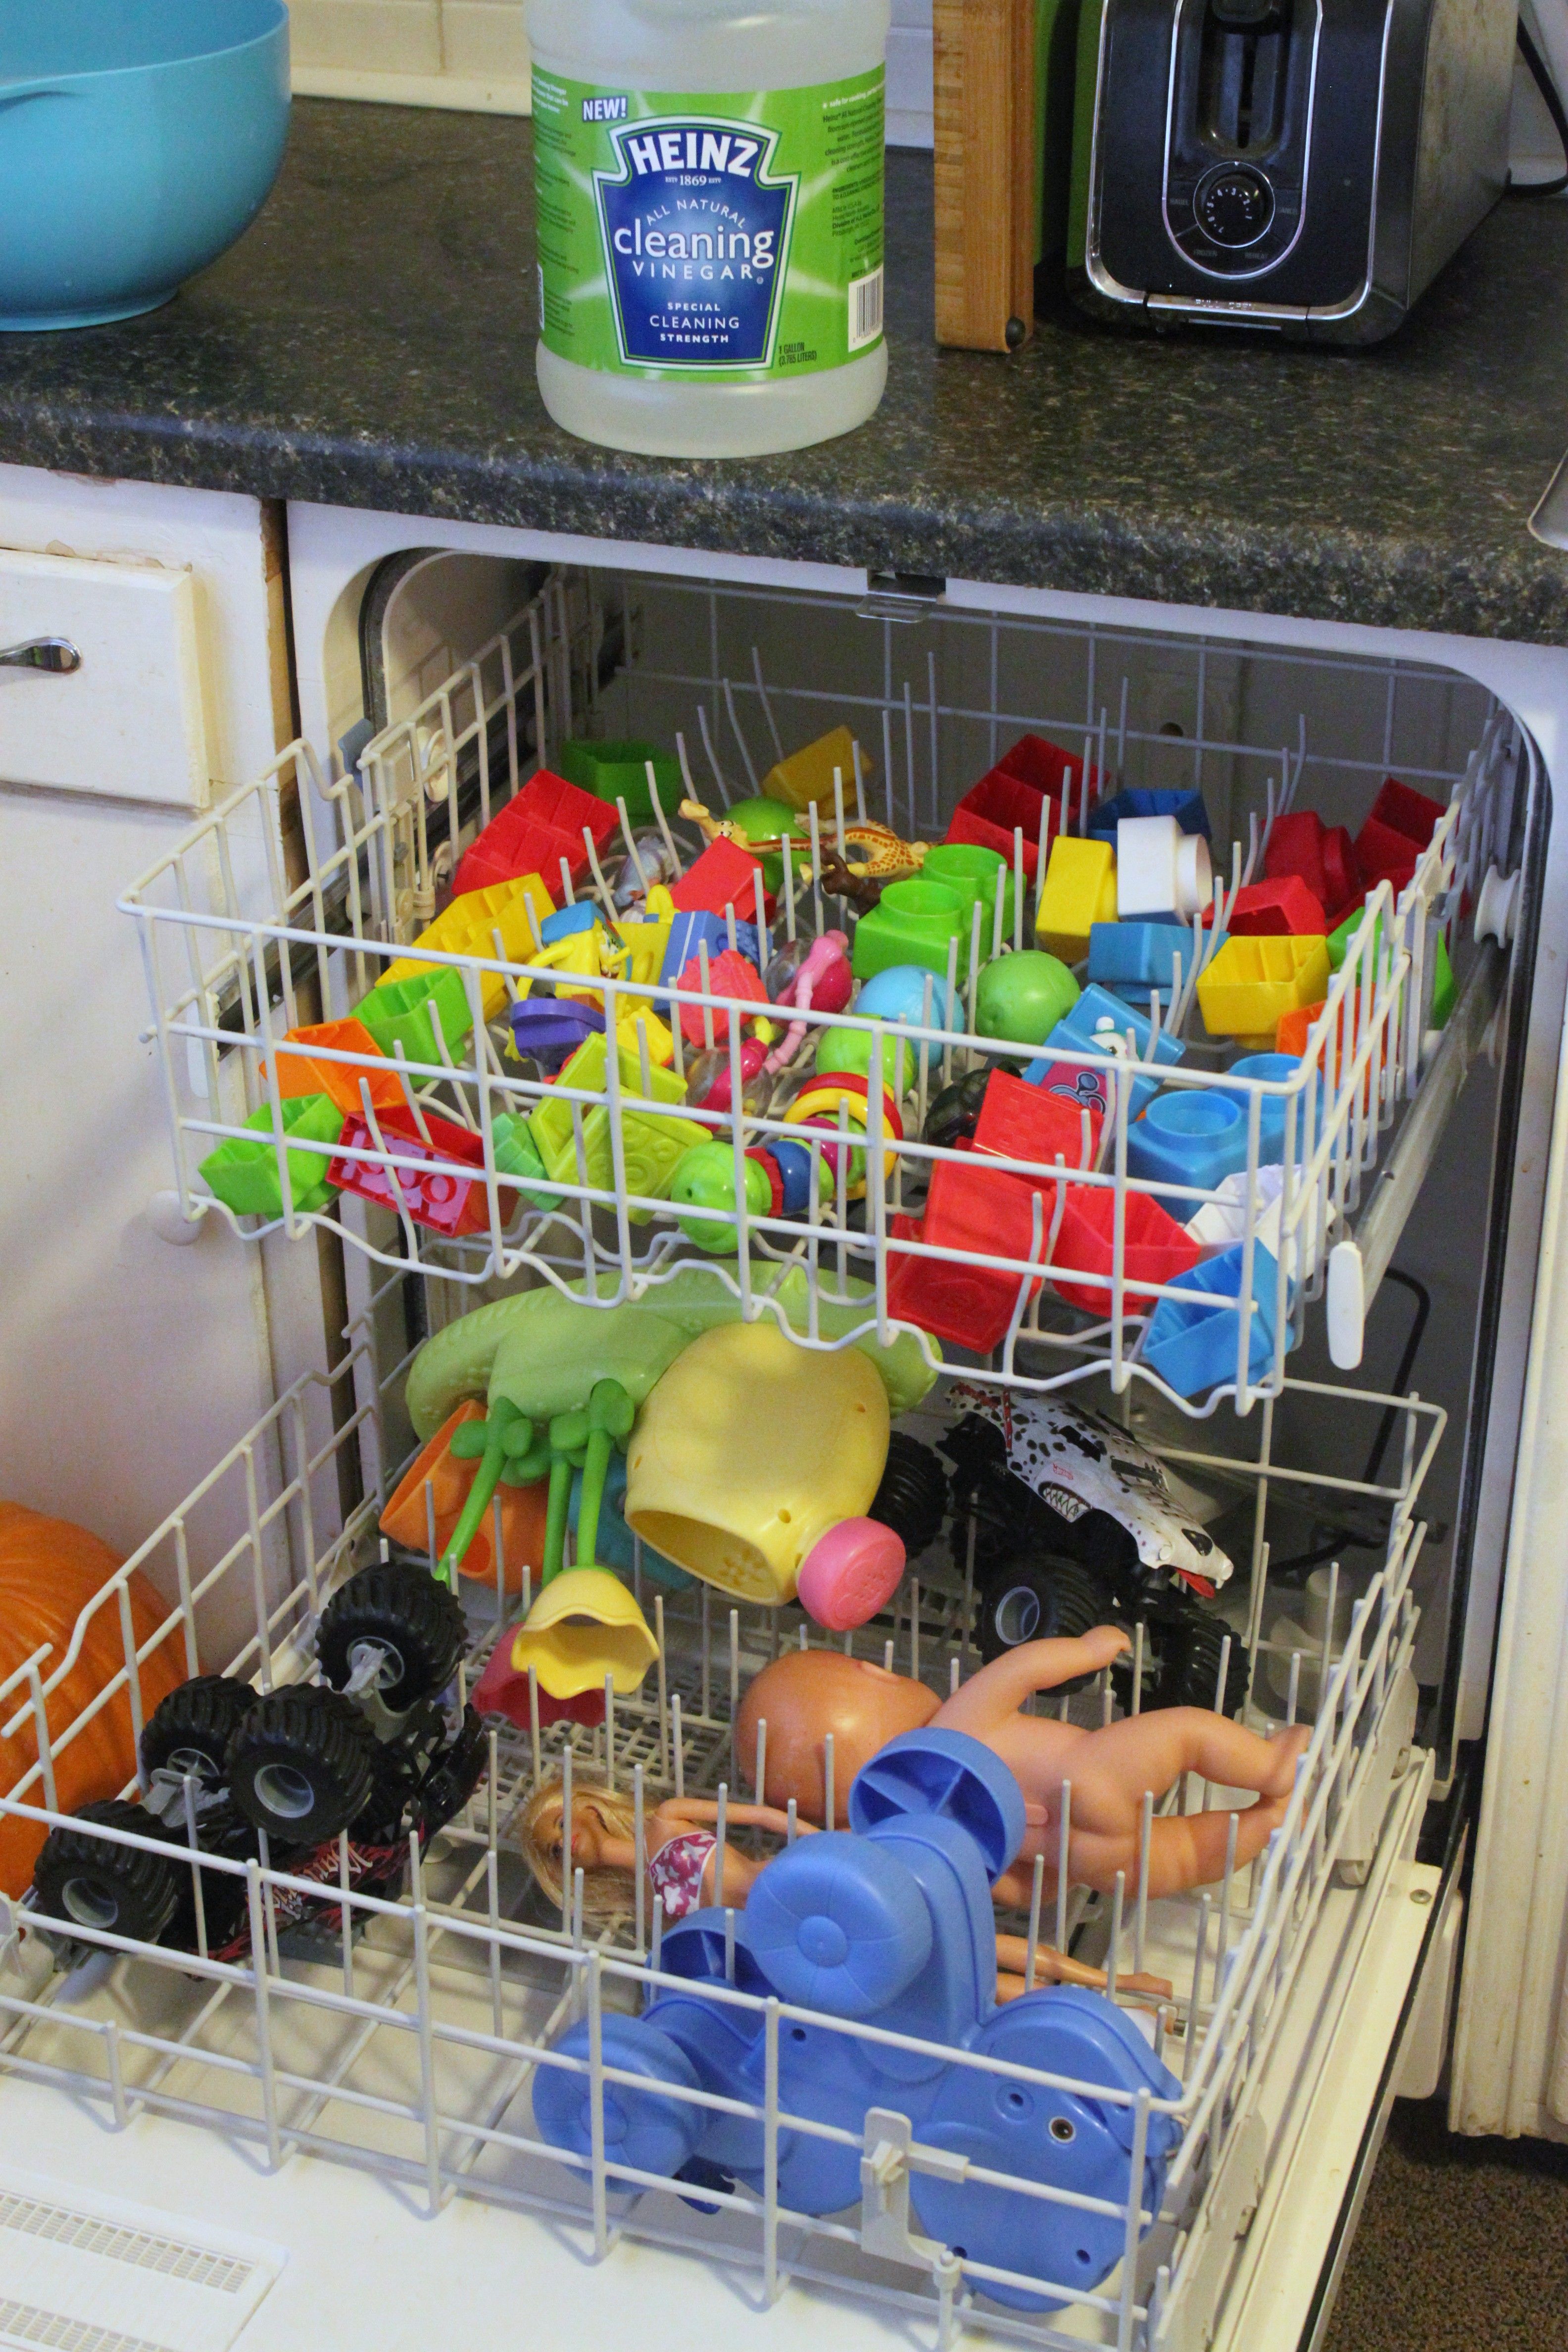 Clean your kids toys in the dishwasher with vinegar! #HeinzVinegar